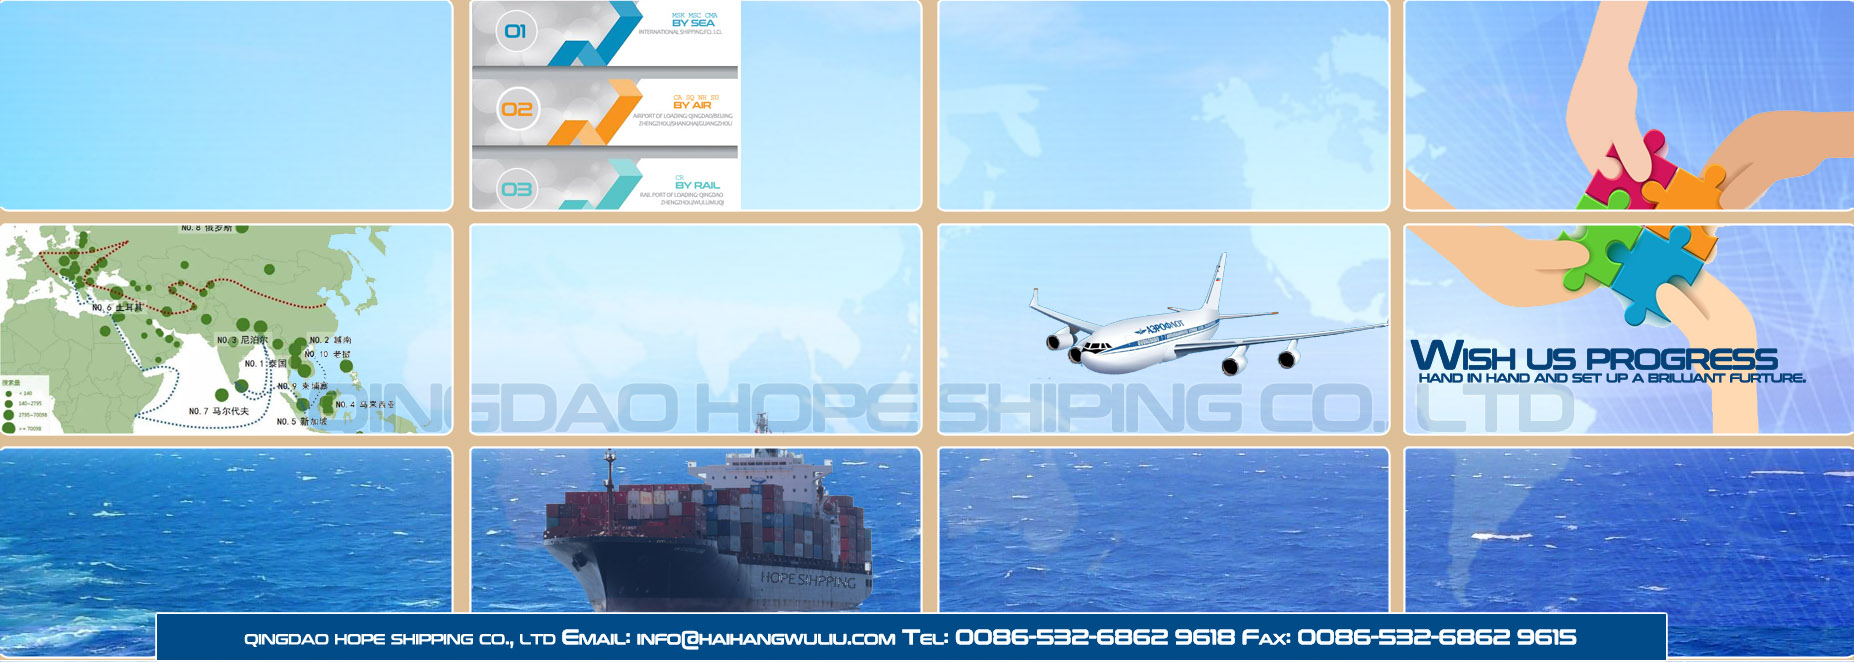 QINGDAO HOPE SHIPPING CO., LTD